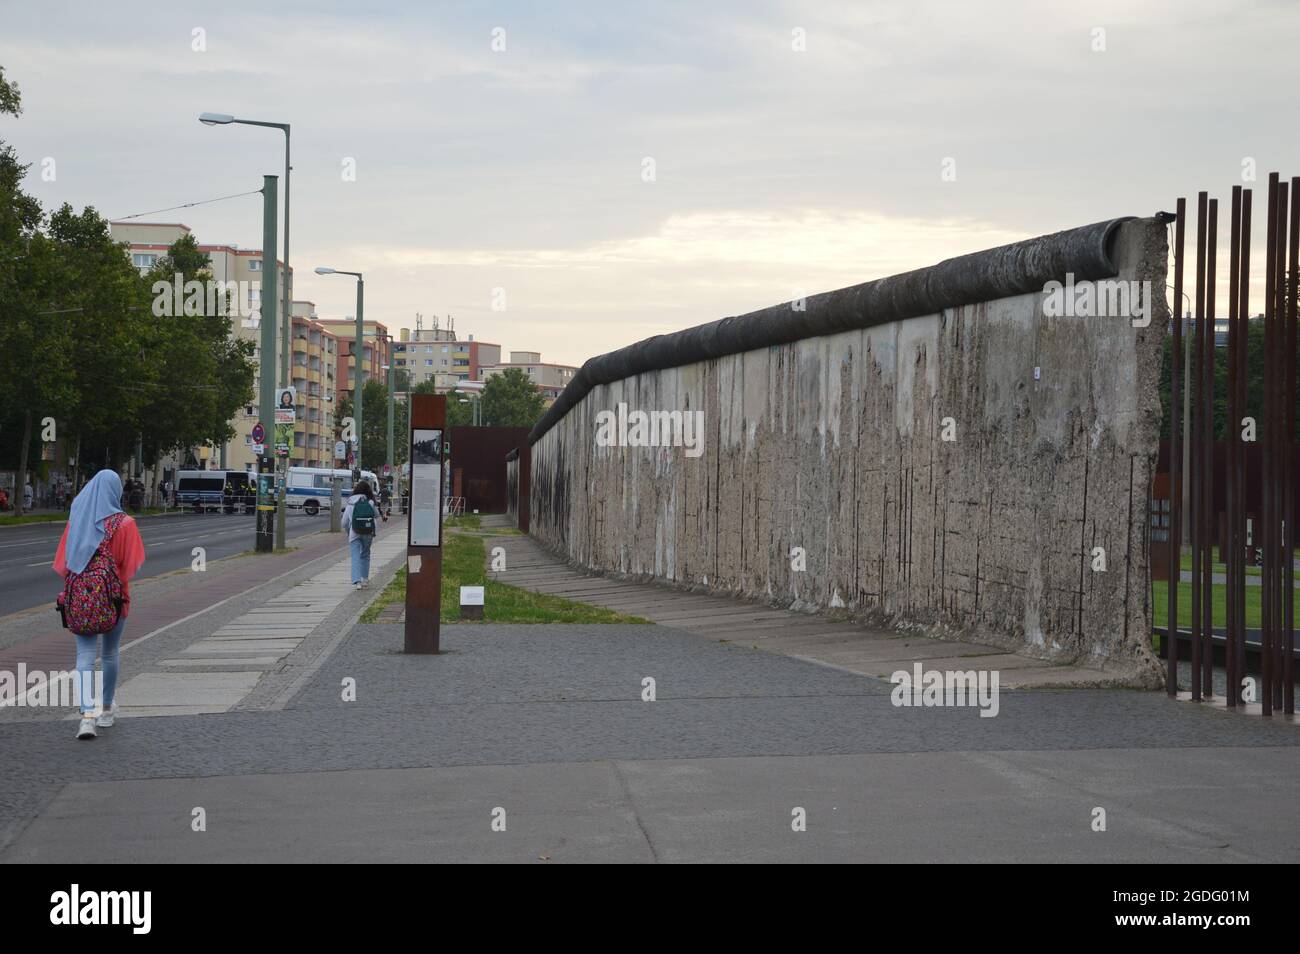 60° anniversario della costruzione del muro di Berlino. Il 13 agosto 1961 iniziò la costruzione del Muro di Berlino. Controlli rigorosi della polizia su Bernauer Strasse vicino al Memoriale del Muro di Berlino prima dell'evento ufficiale del memoriale - Berlino, Germania - 13 agosto 2021. Foto Stock